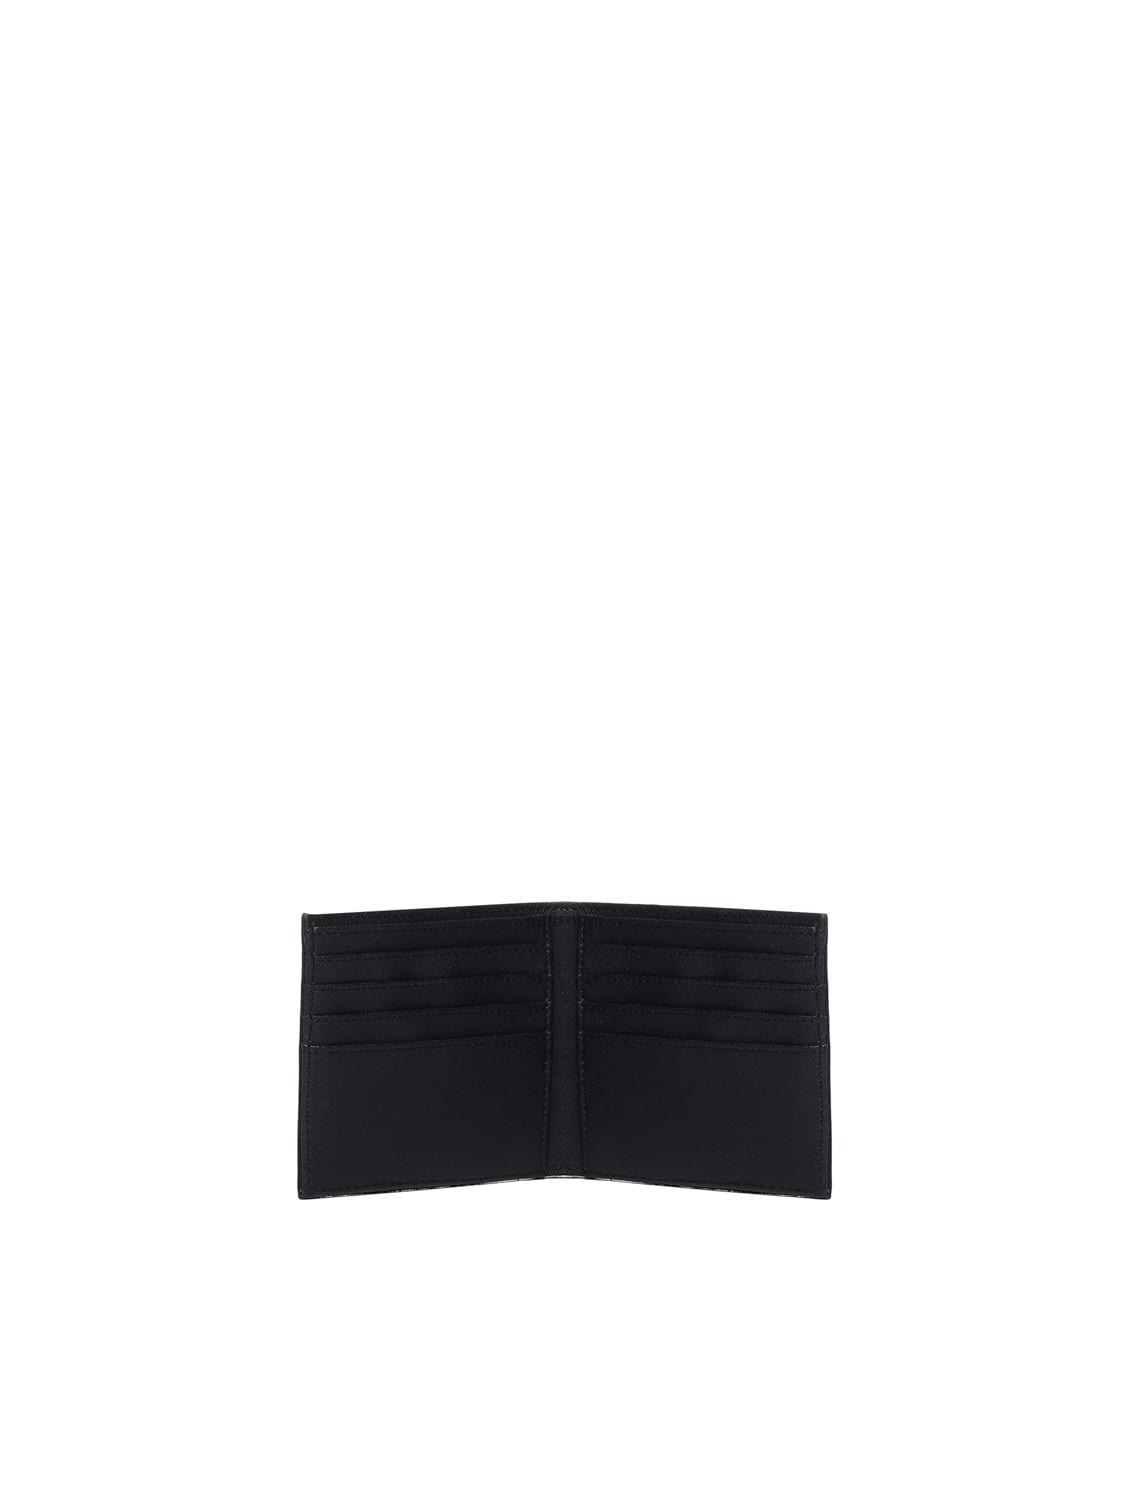 Shop Emporio Armani Wallet With Application In Black